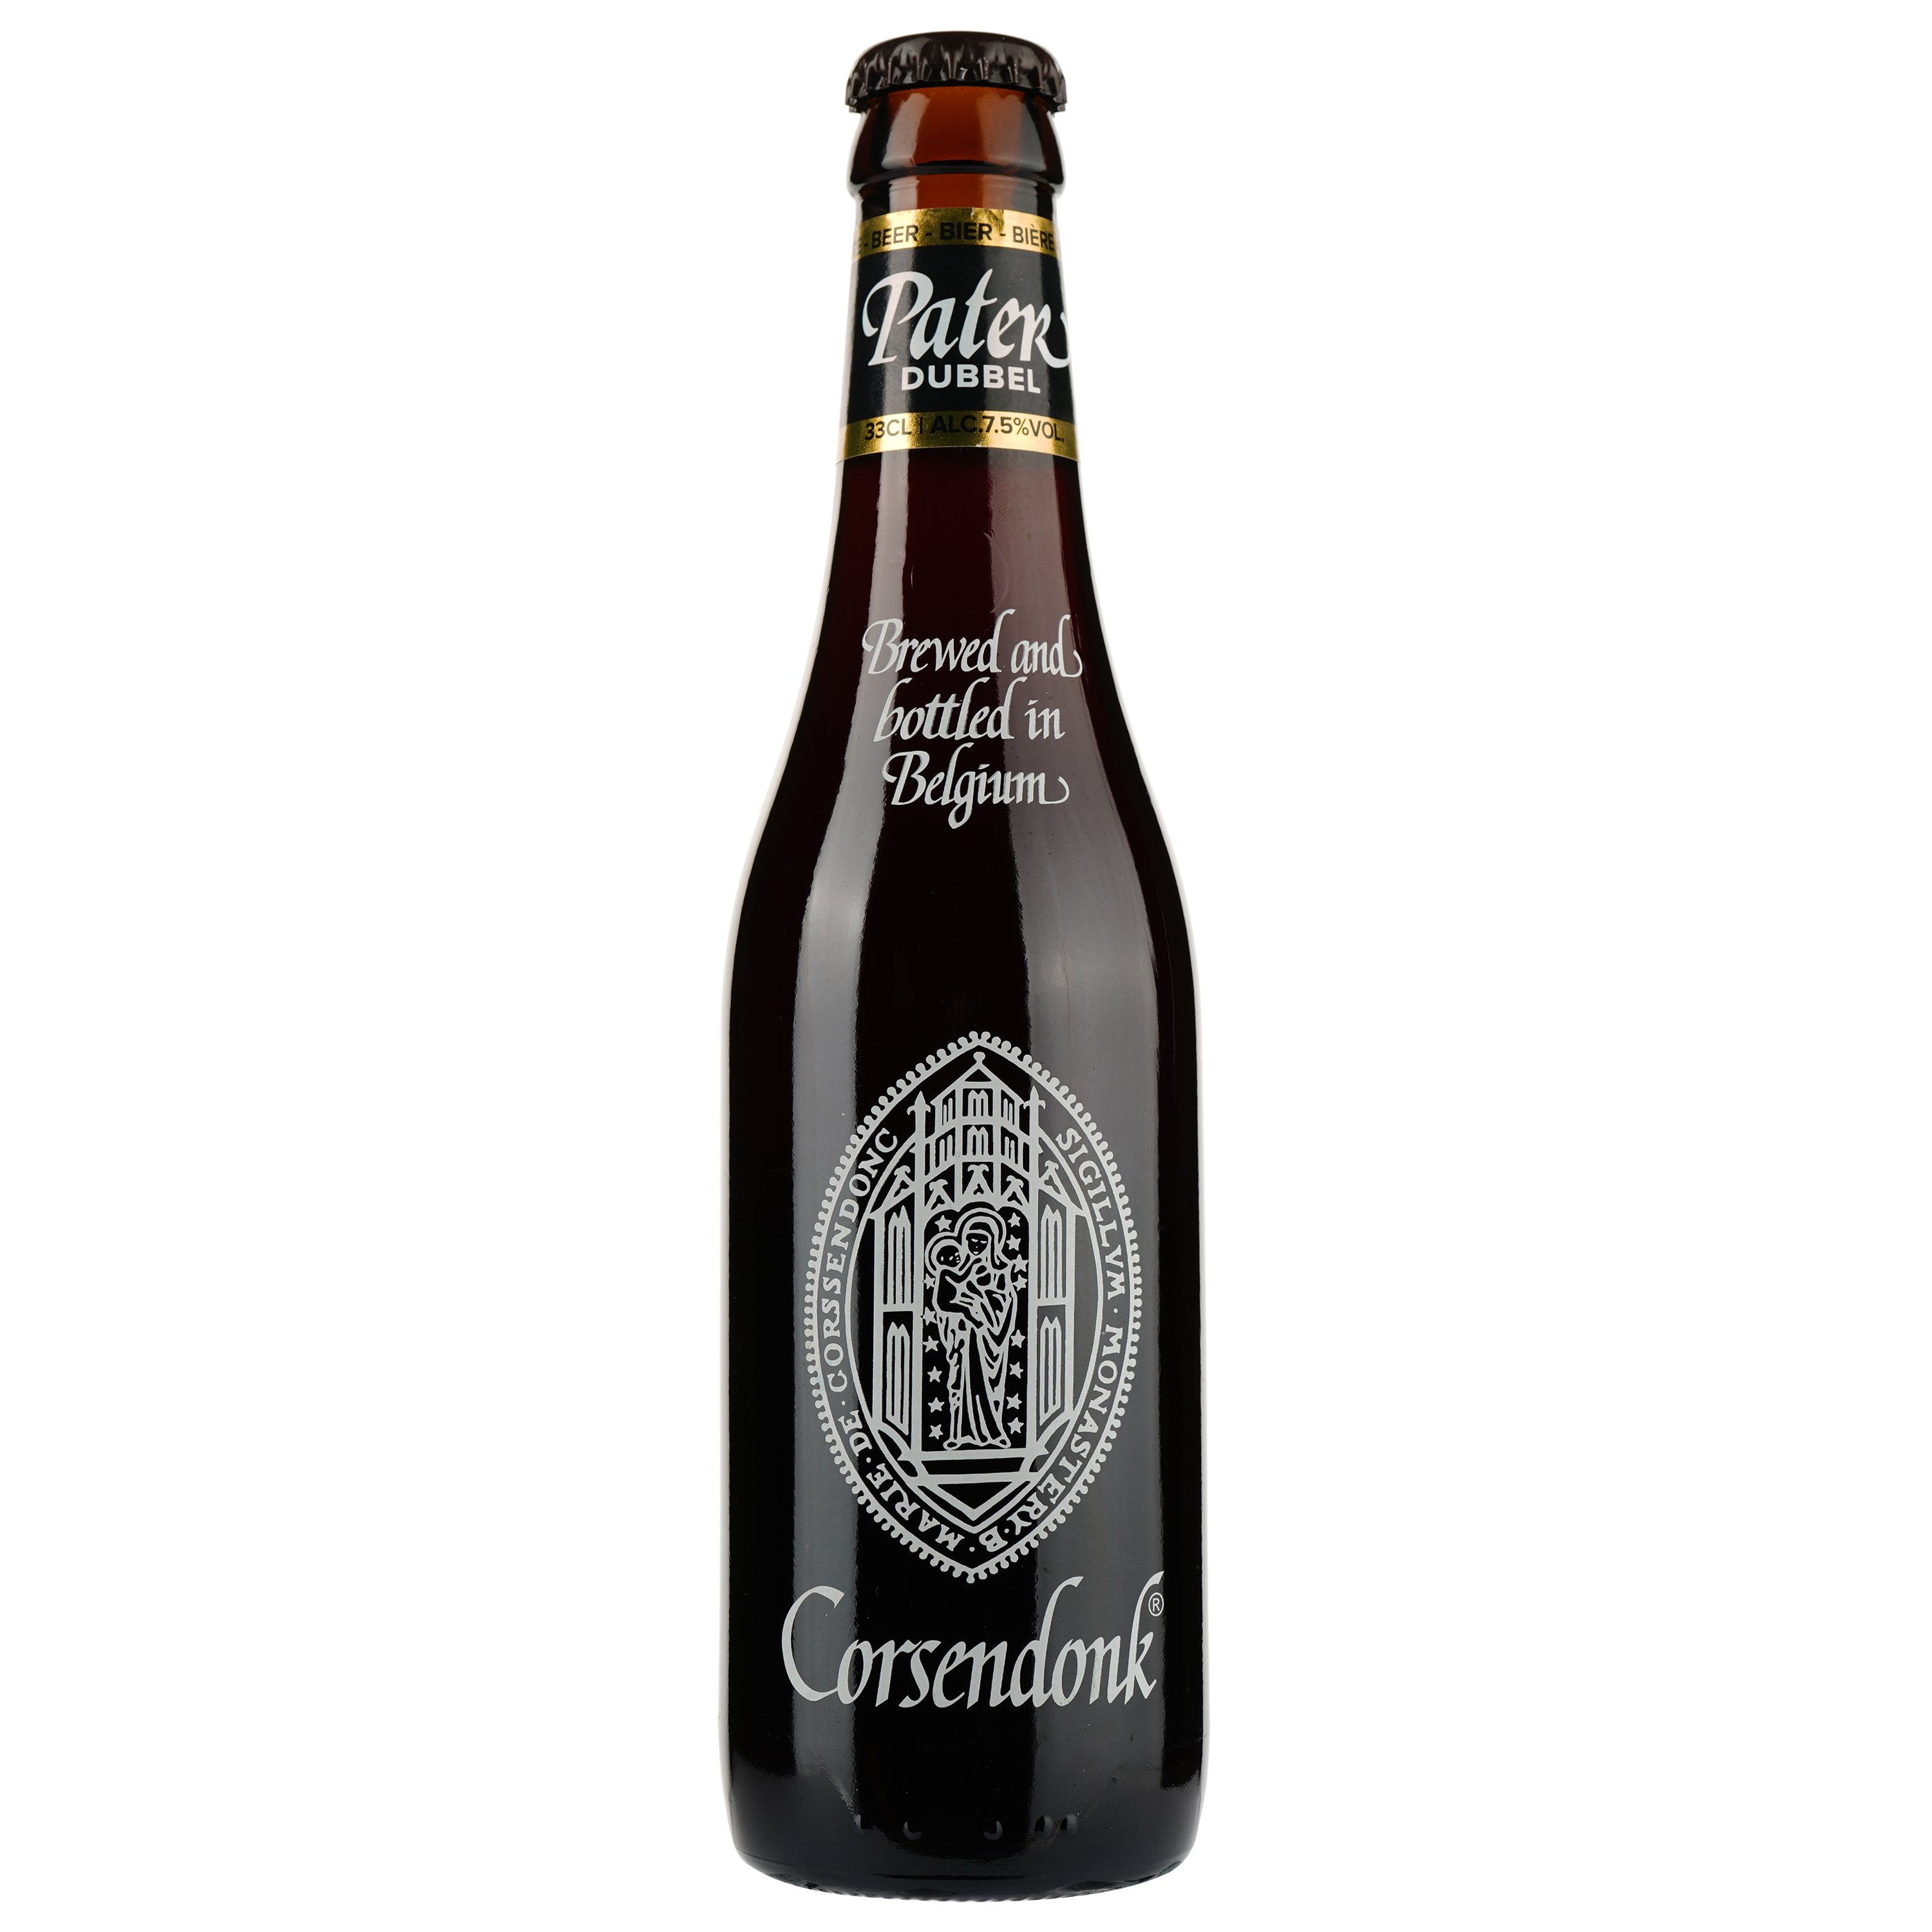 Пиво Corsendonk Pater темное, 6,5%, 0,33 л (450159) - фото 1